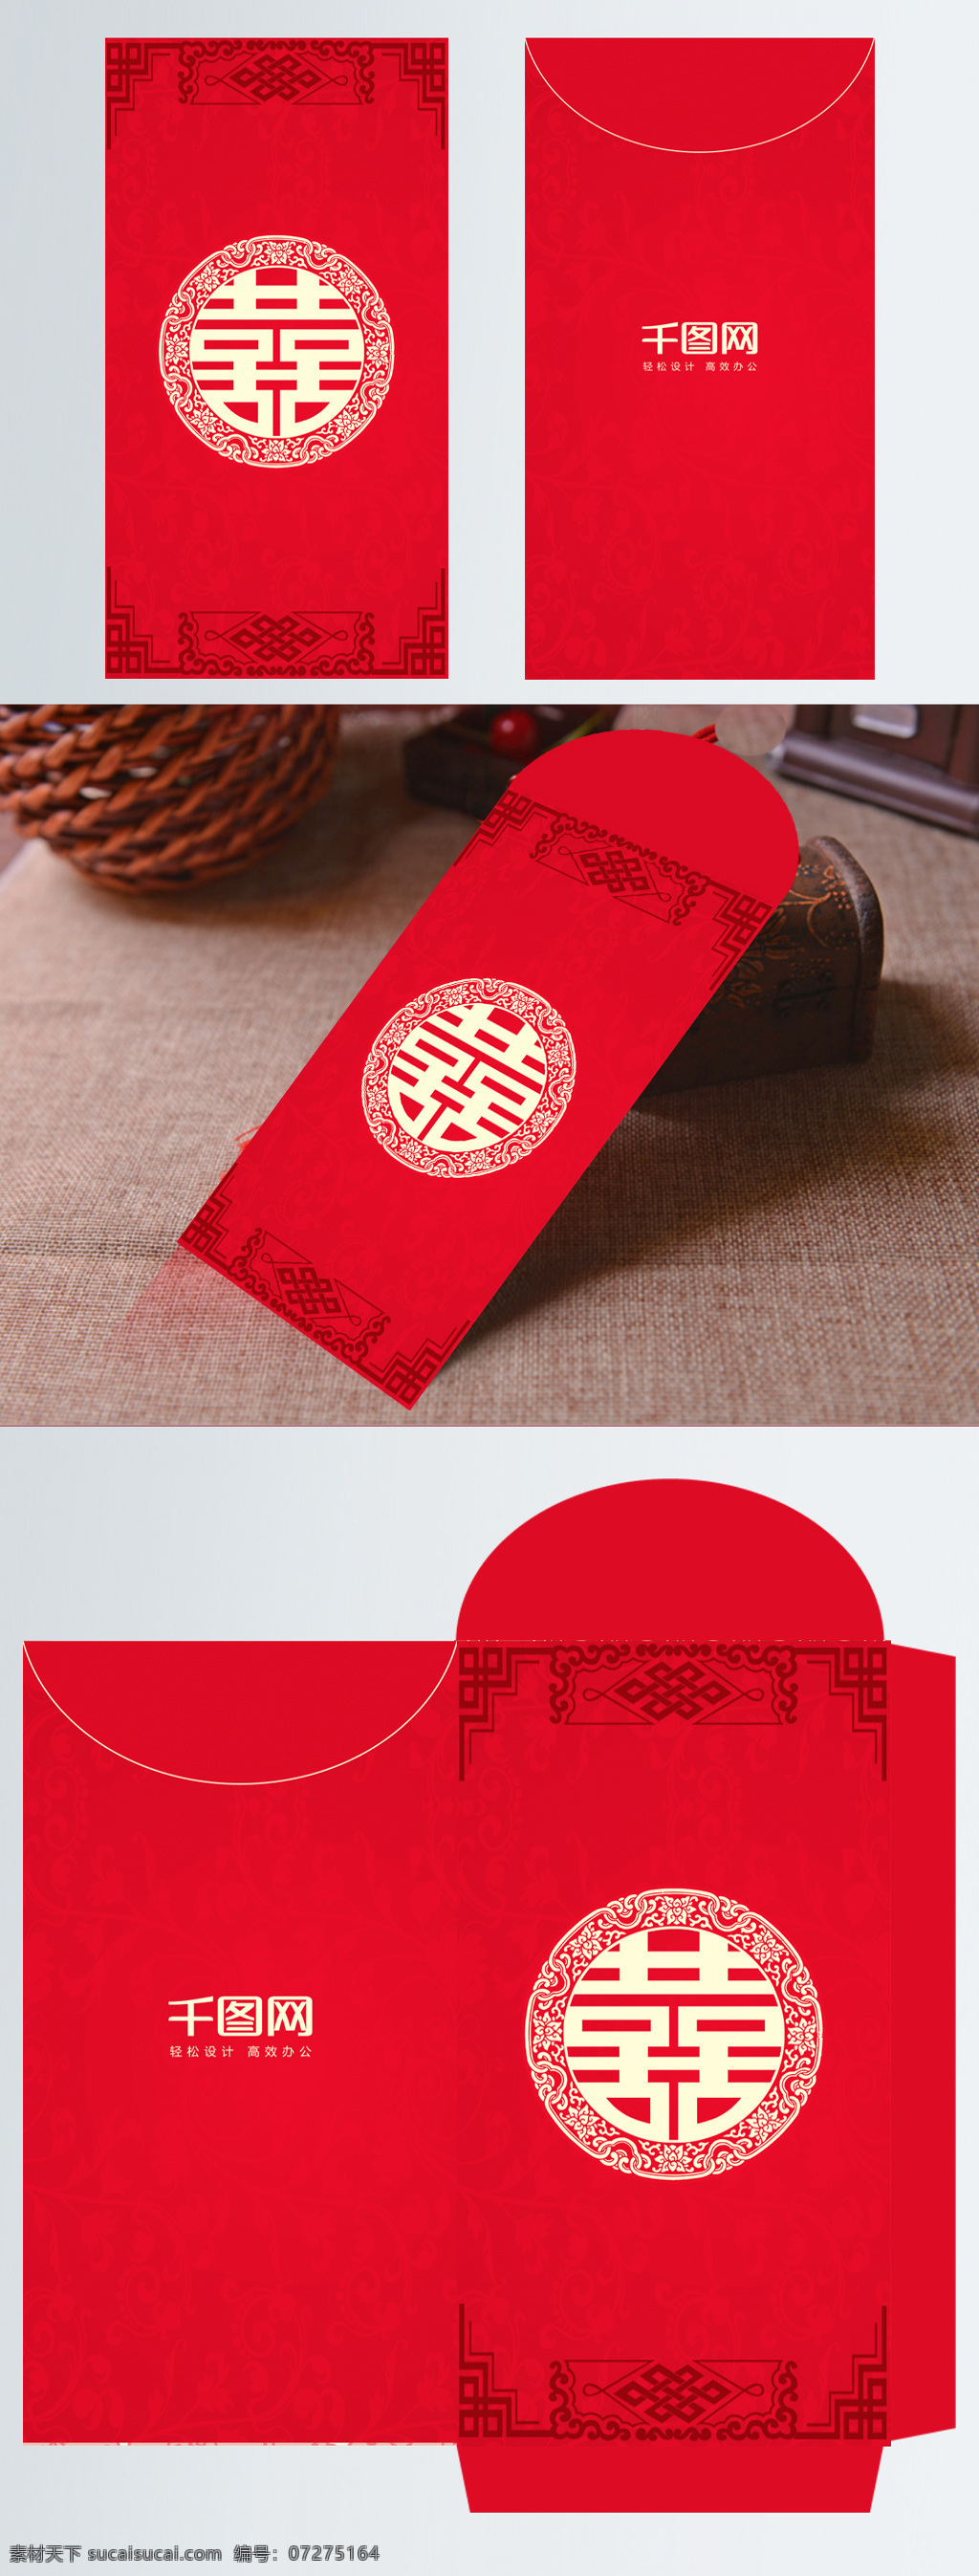 红色 简约 喜庆 红包 模板 大气 红包设计 红包设计模板 新年红包